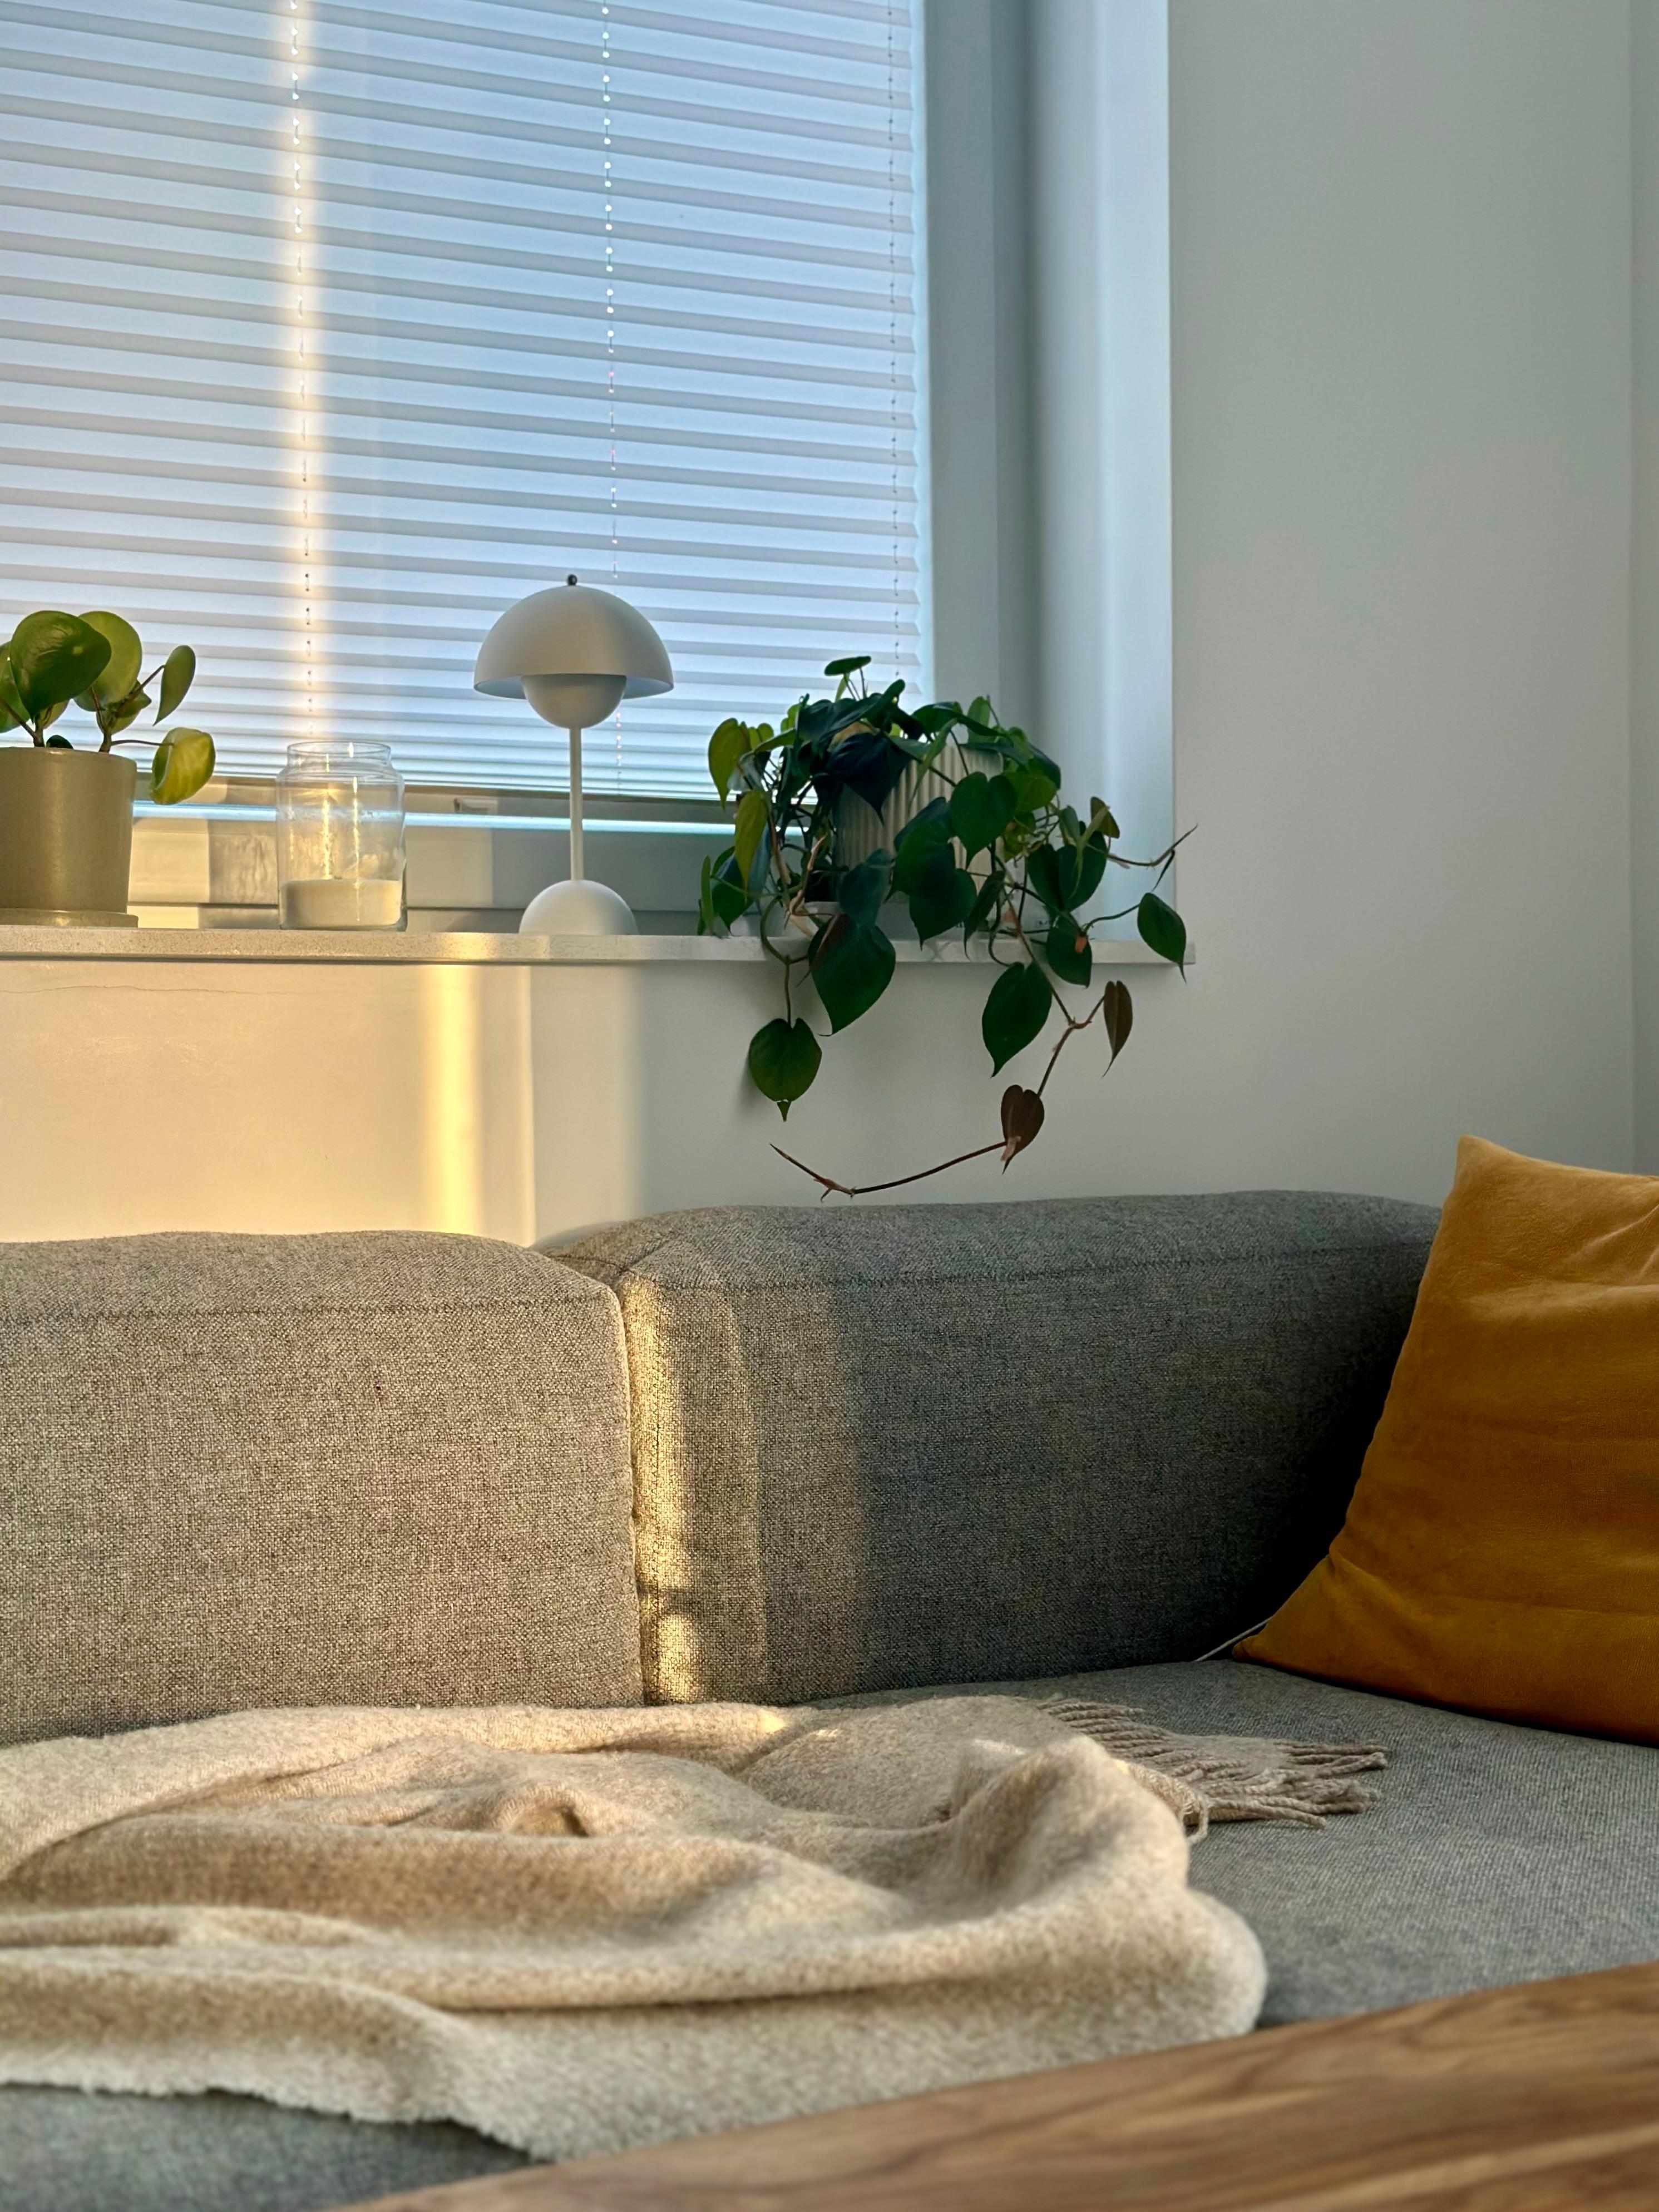 #wohnzimmer #sofa #couchliebt #nordicdesign #wolldecke #fensterbank #dekoideen #pflanzen #leuchte #lampe 